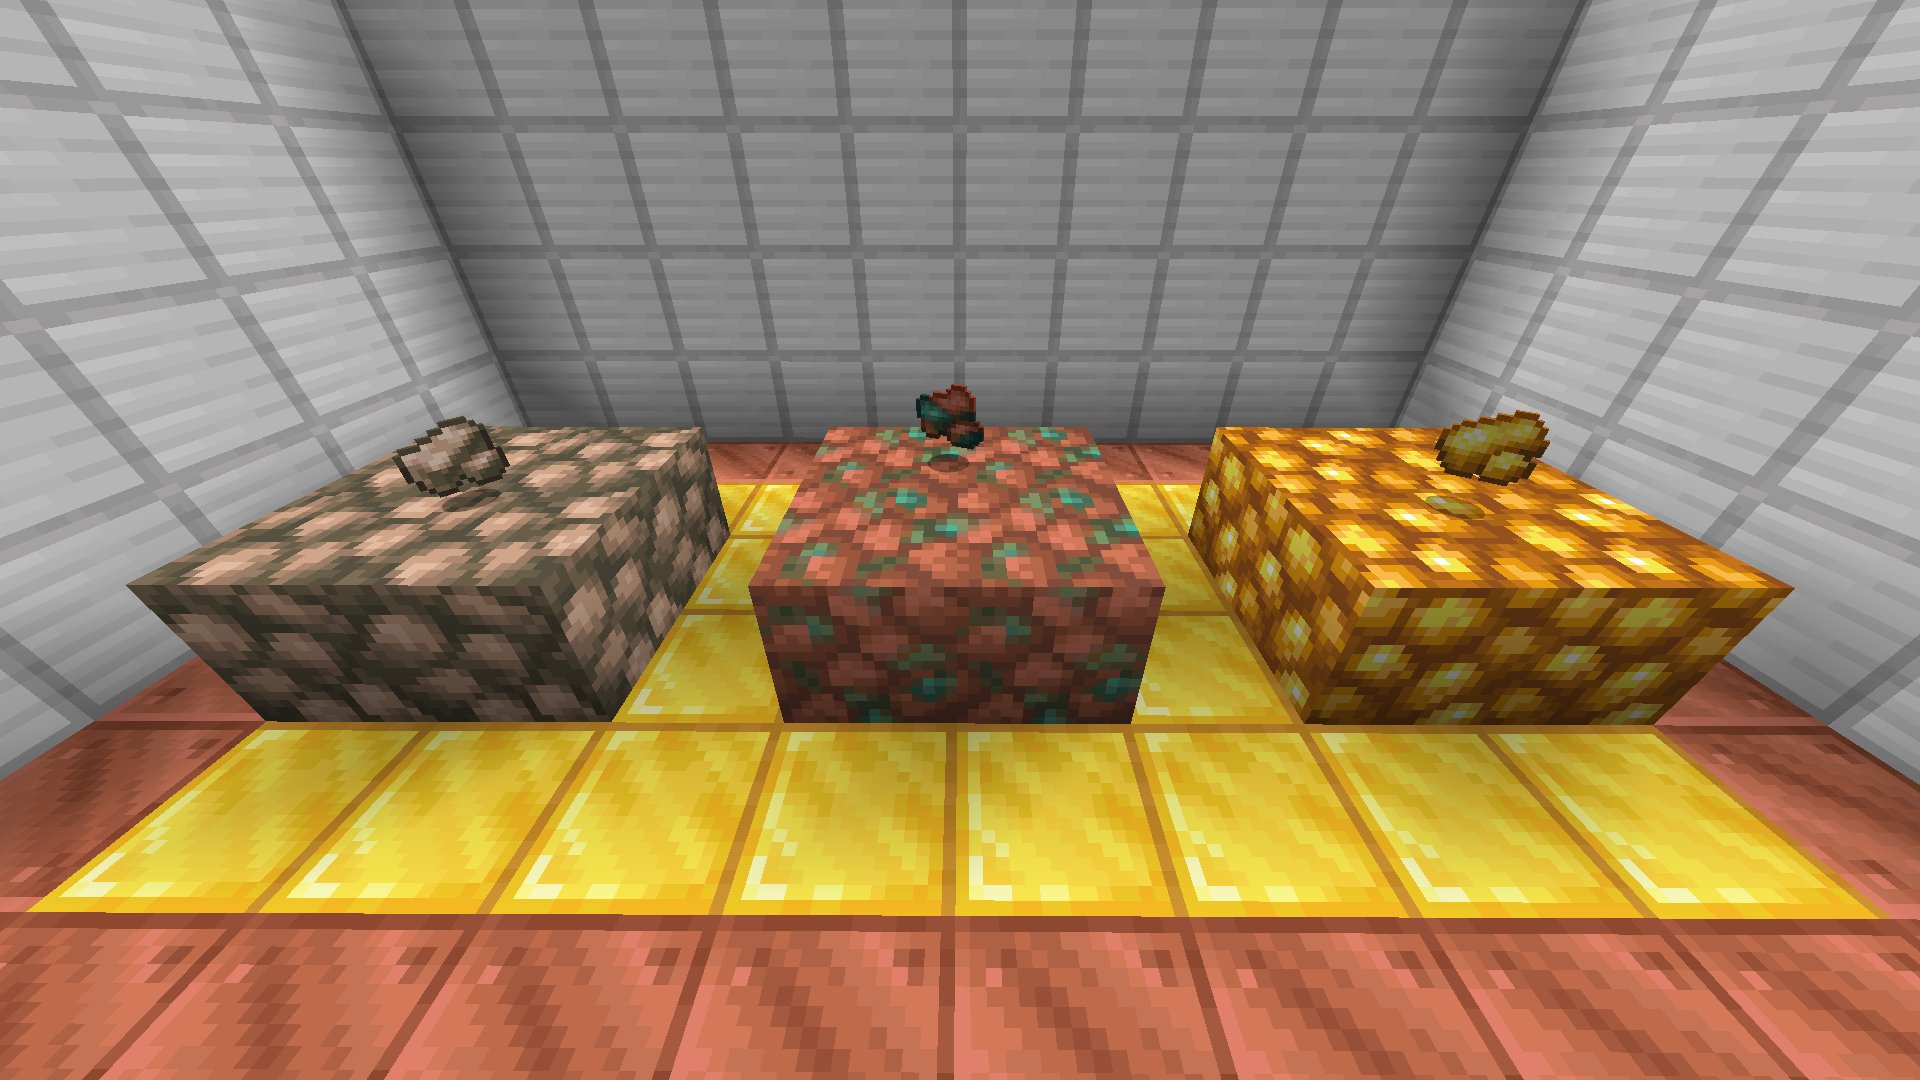 Minecraft Portal 🎄🇧🇷 on X: #6 Minérios, blocos, lajes e escadas de  cobre (Possuem versões enceradas pelo favo de mel)   / X